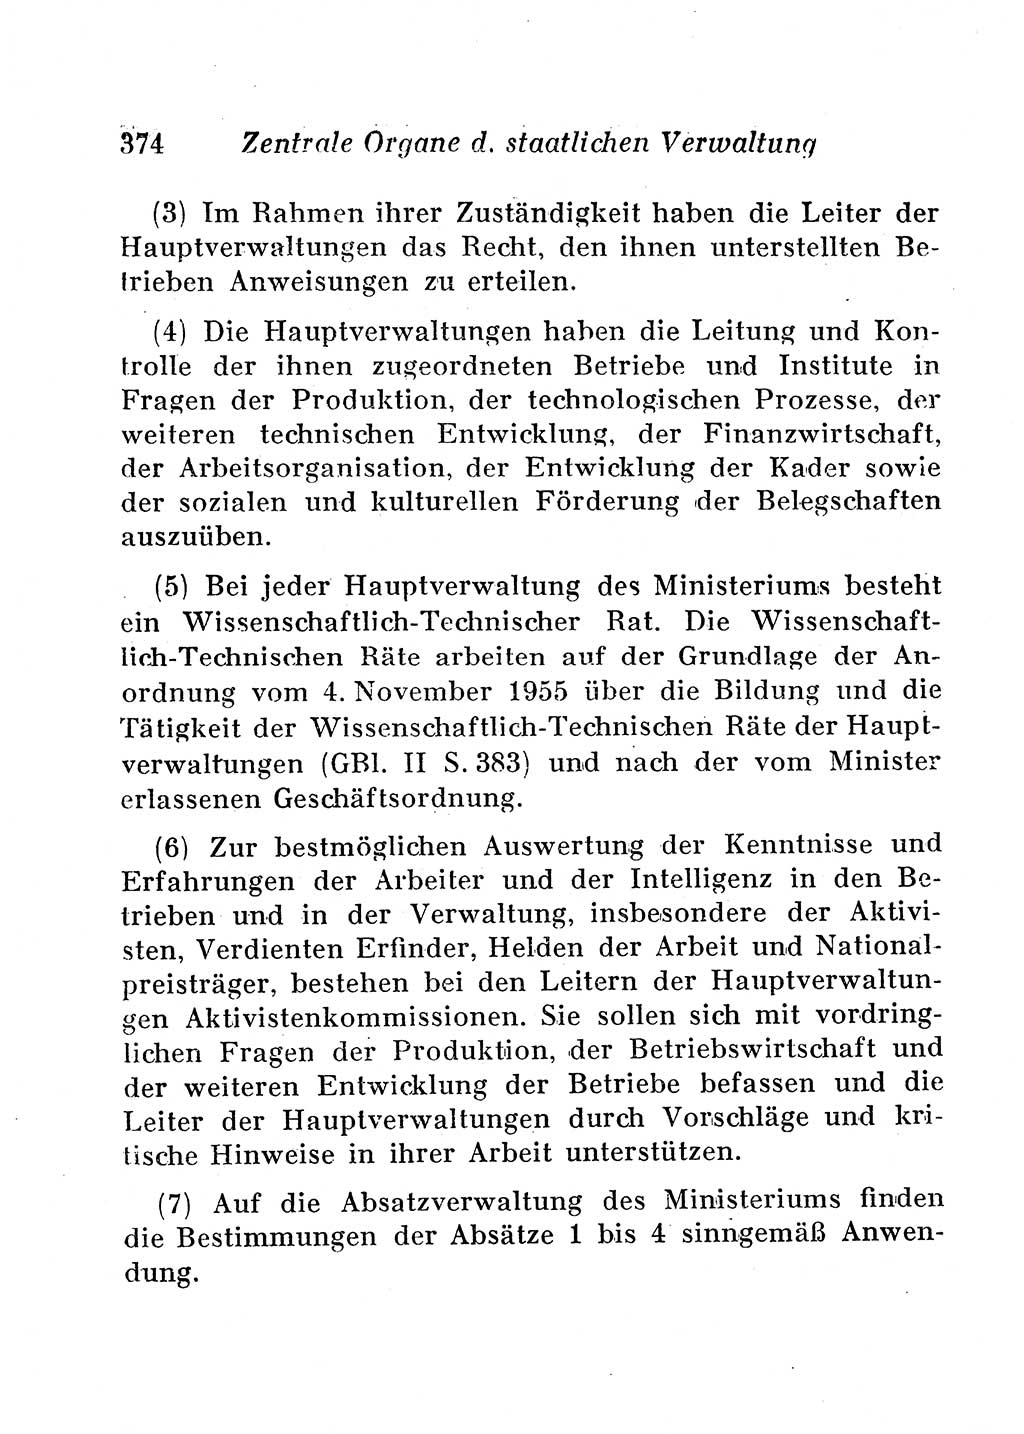 Staats- und verwaltungsrechtliche Gesetze der Deutschen Demokratischen Republik (DDR) 1958, Seite 374 (StVerwR Ges. DDR 1958, S. 374)